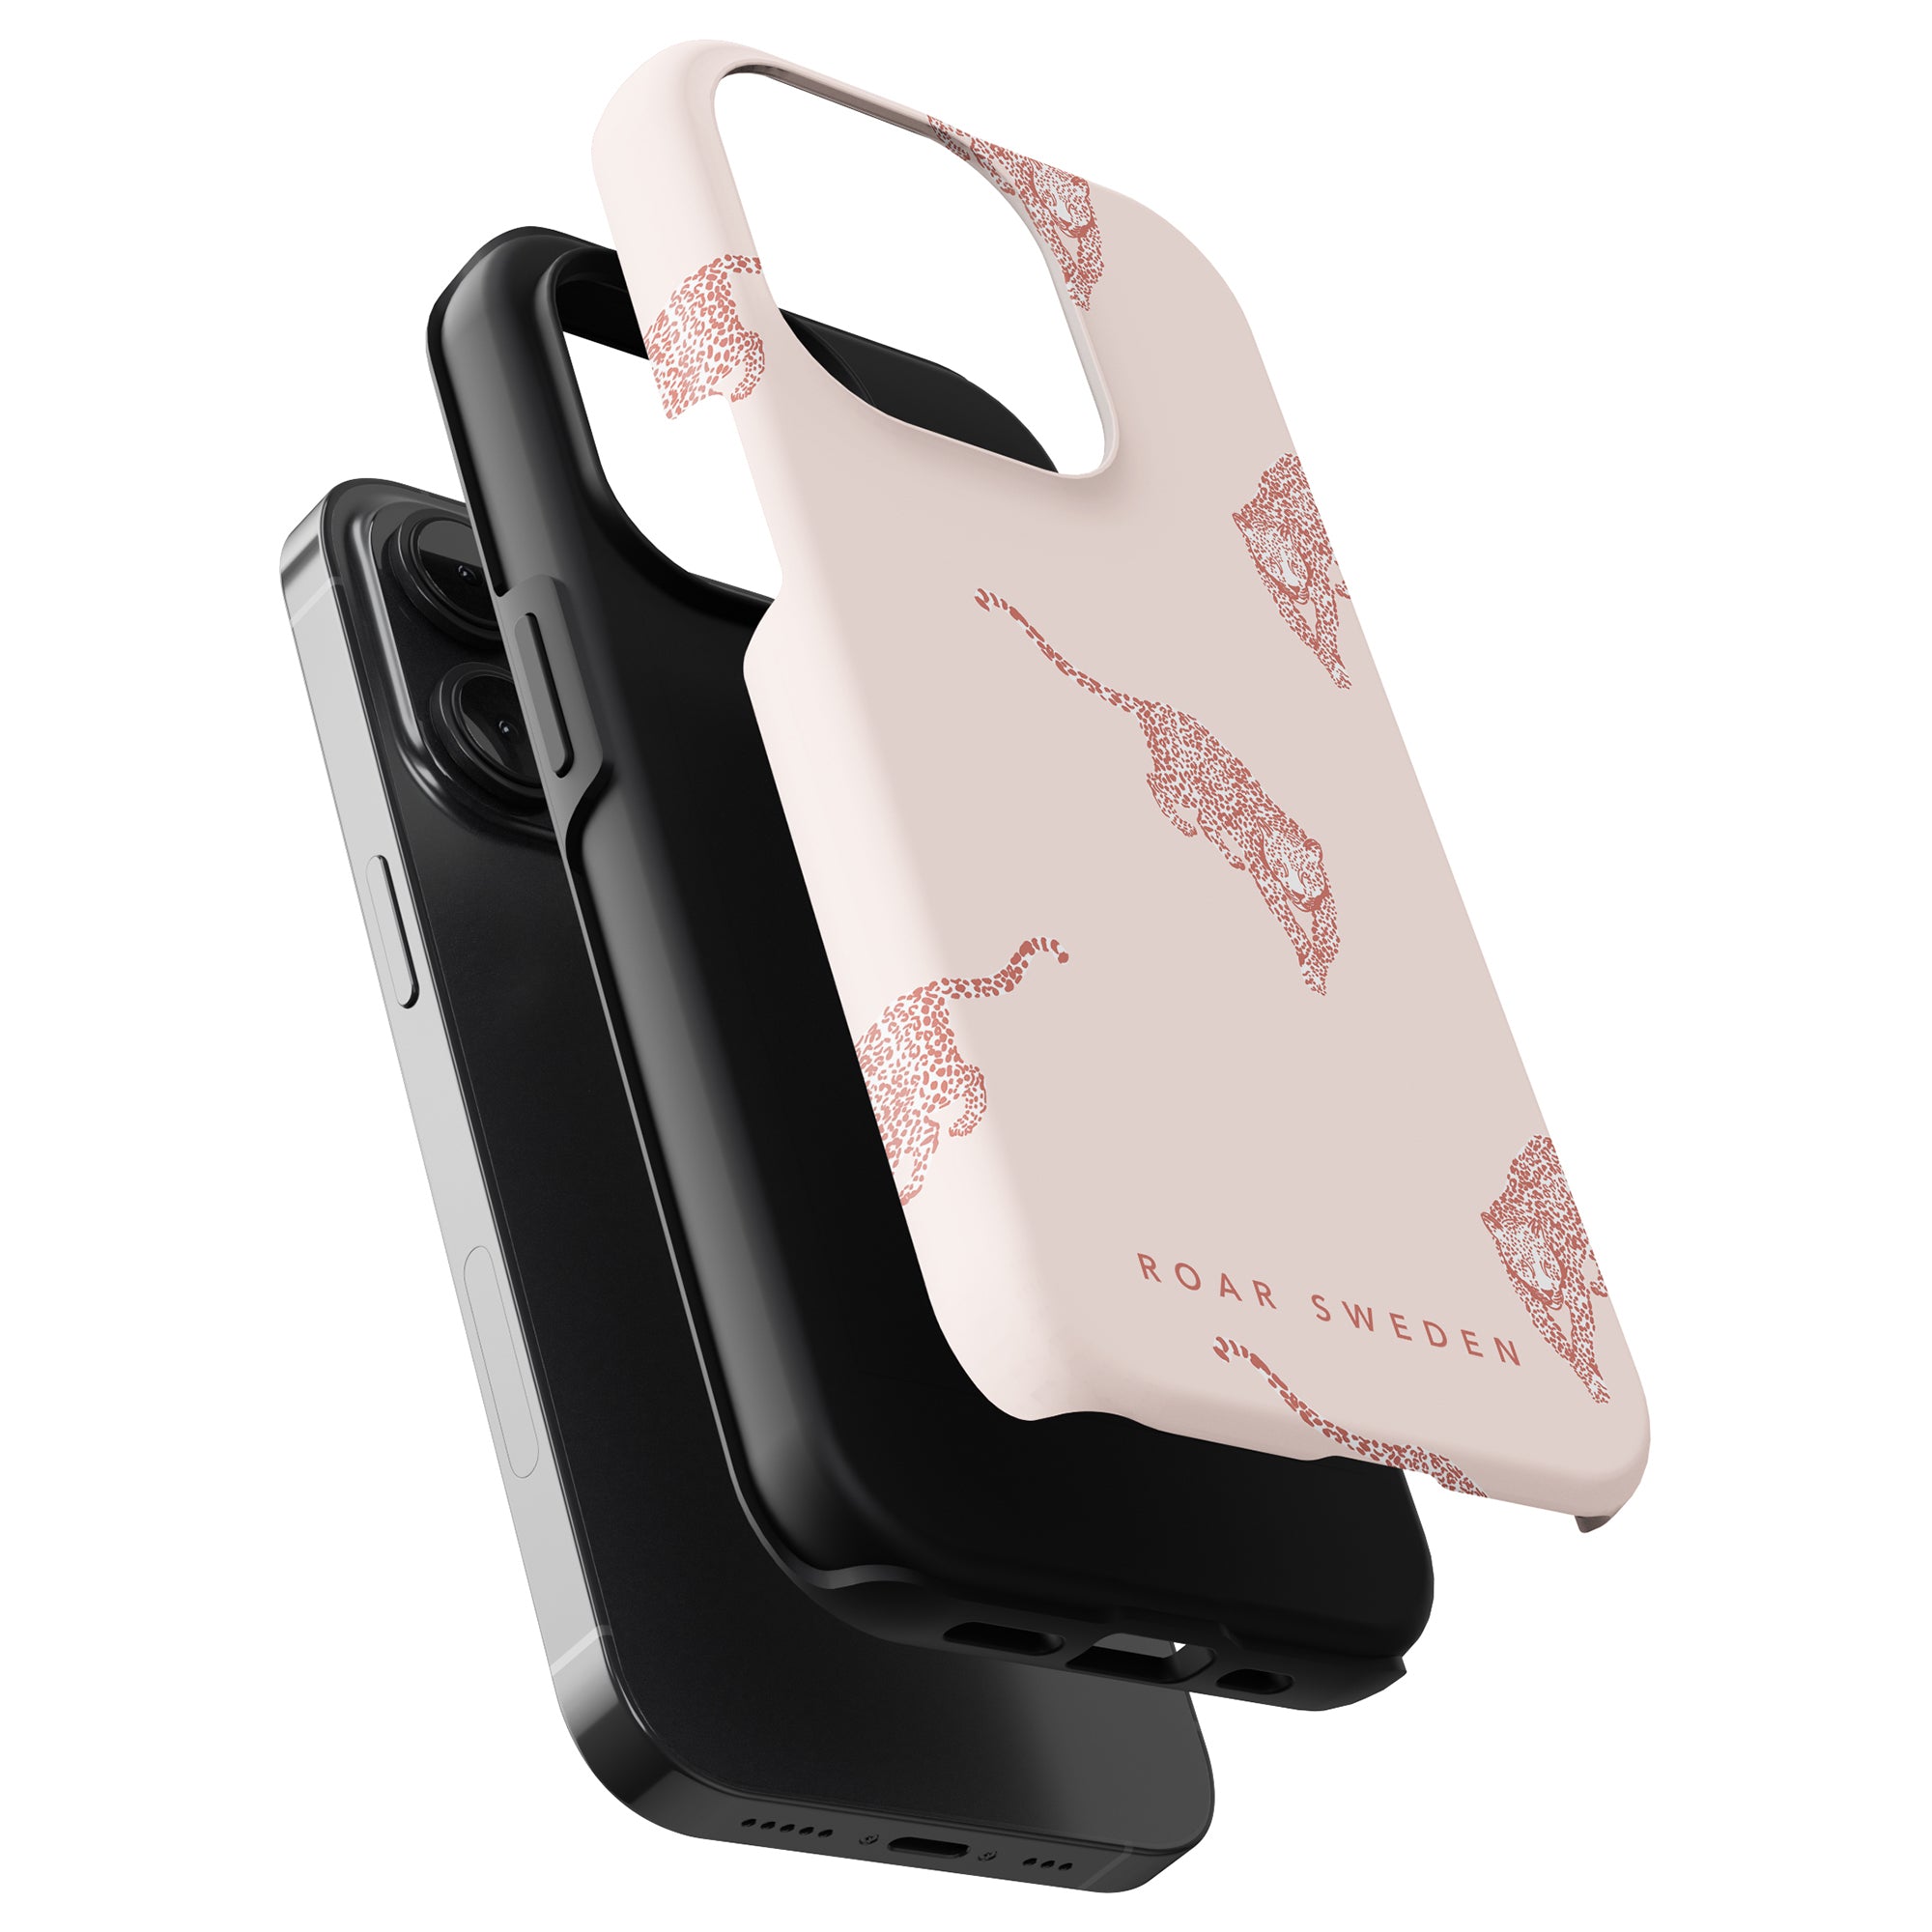 A Roar Swedens Kitty - Tufft fodral, perfekt för att skydda din smartphone. Denna rosa skal är designad speciellt för iPhone 11 Pro.